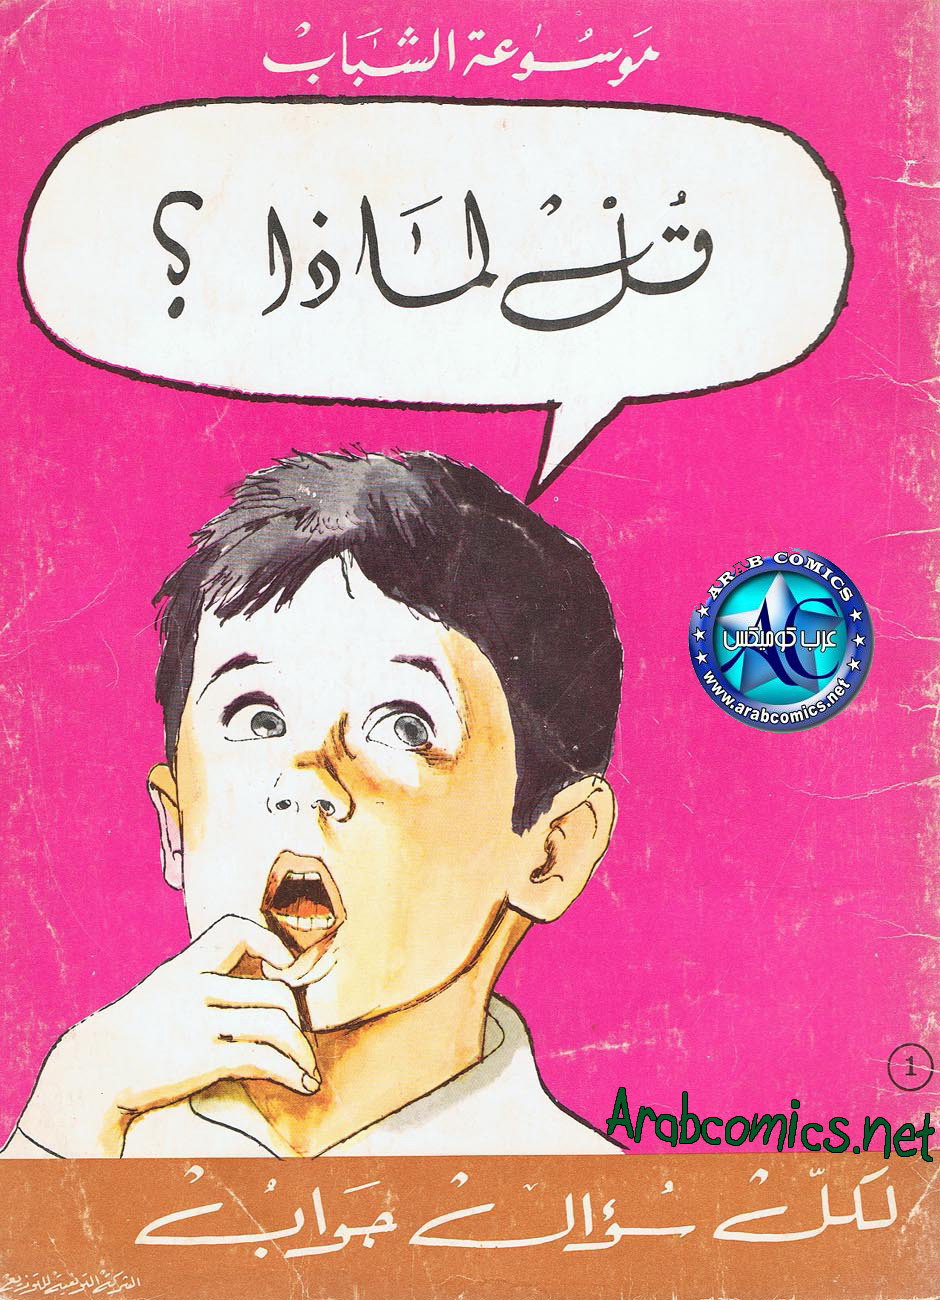 Illustrations dans les éditions arabes P_689t4mgx1